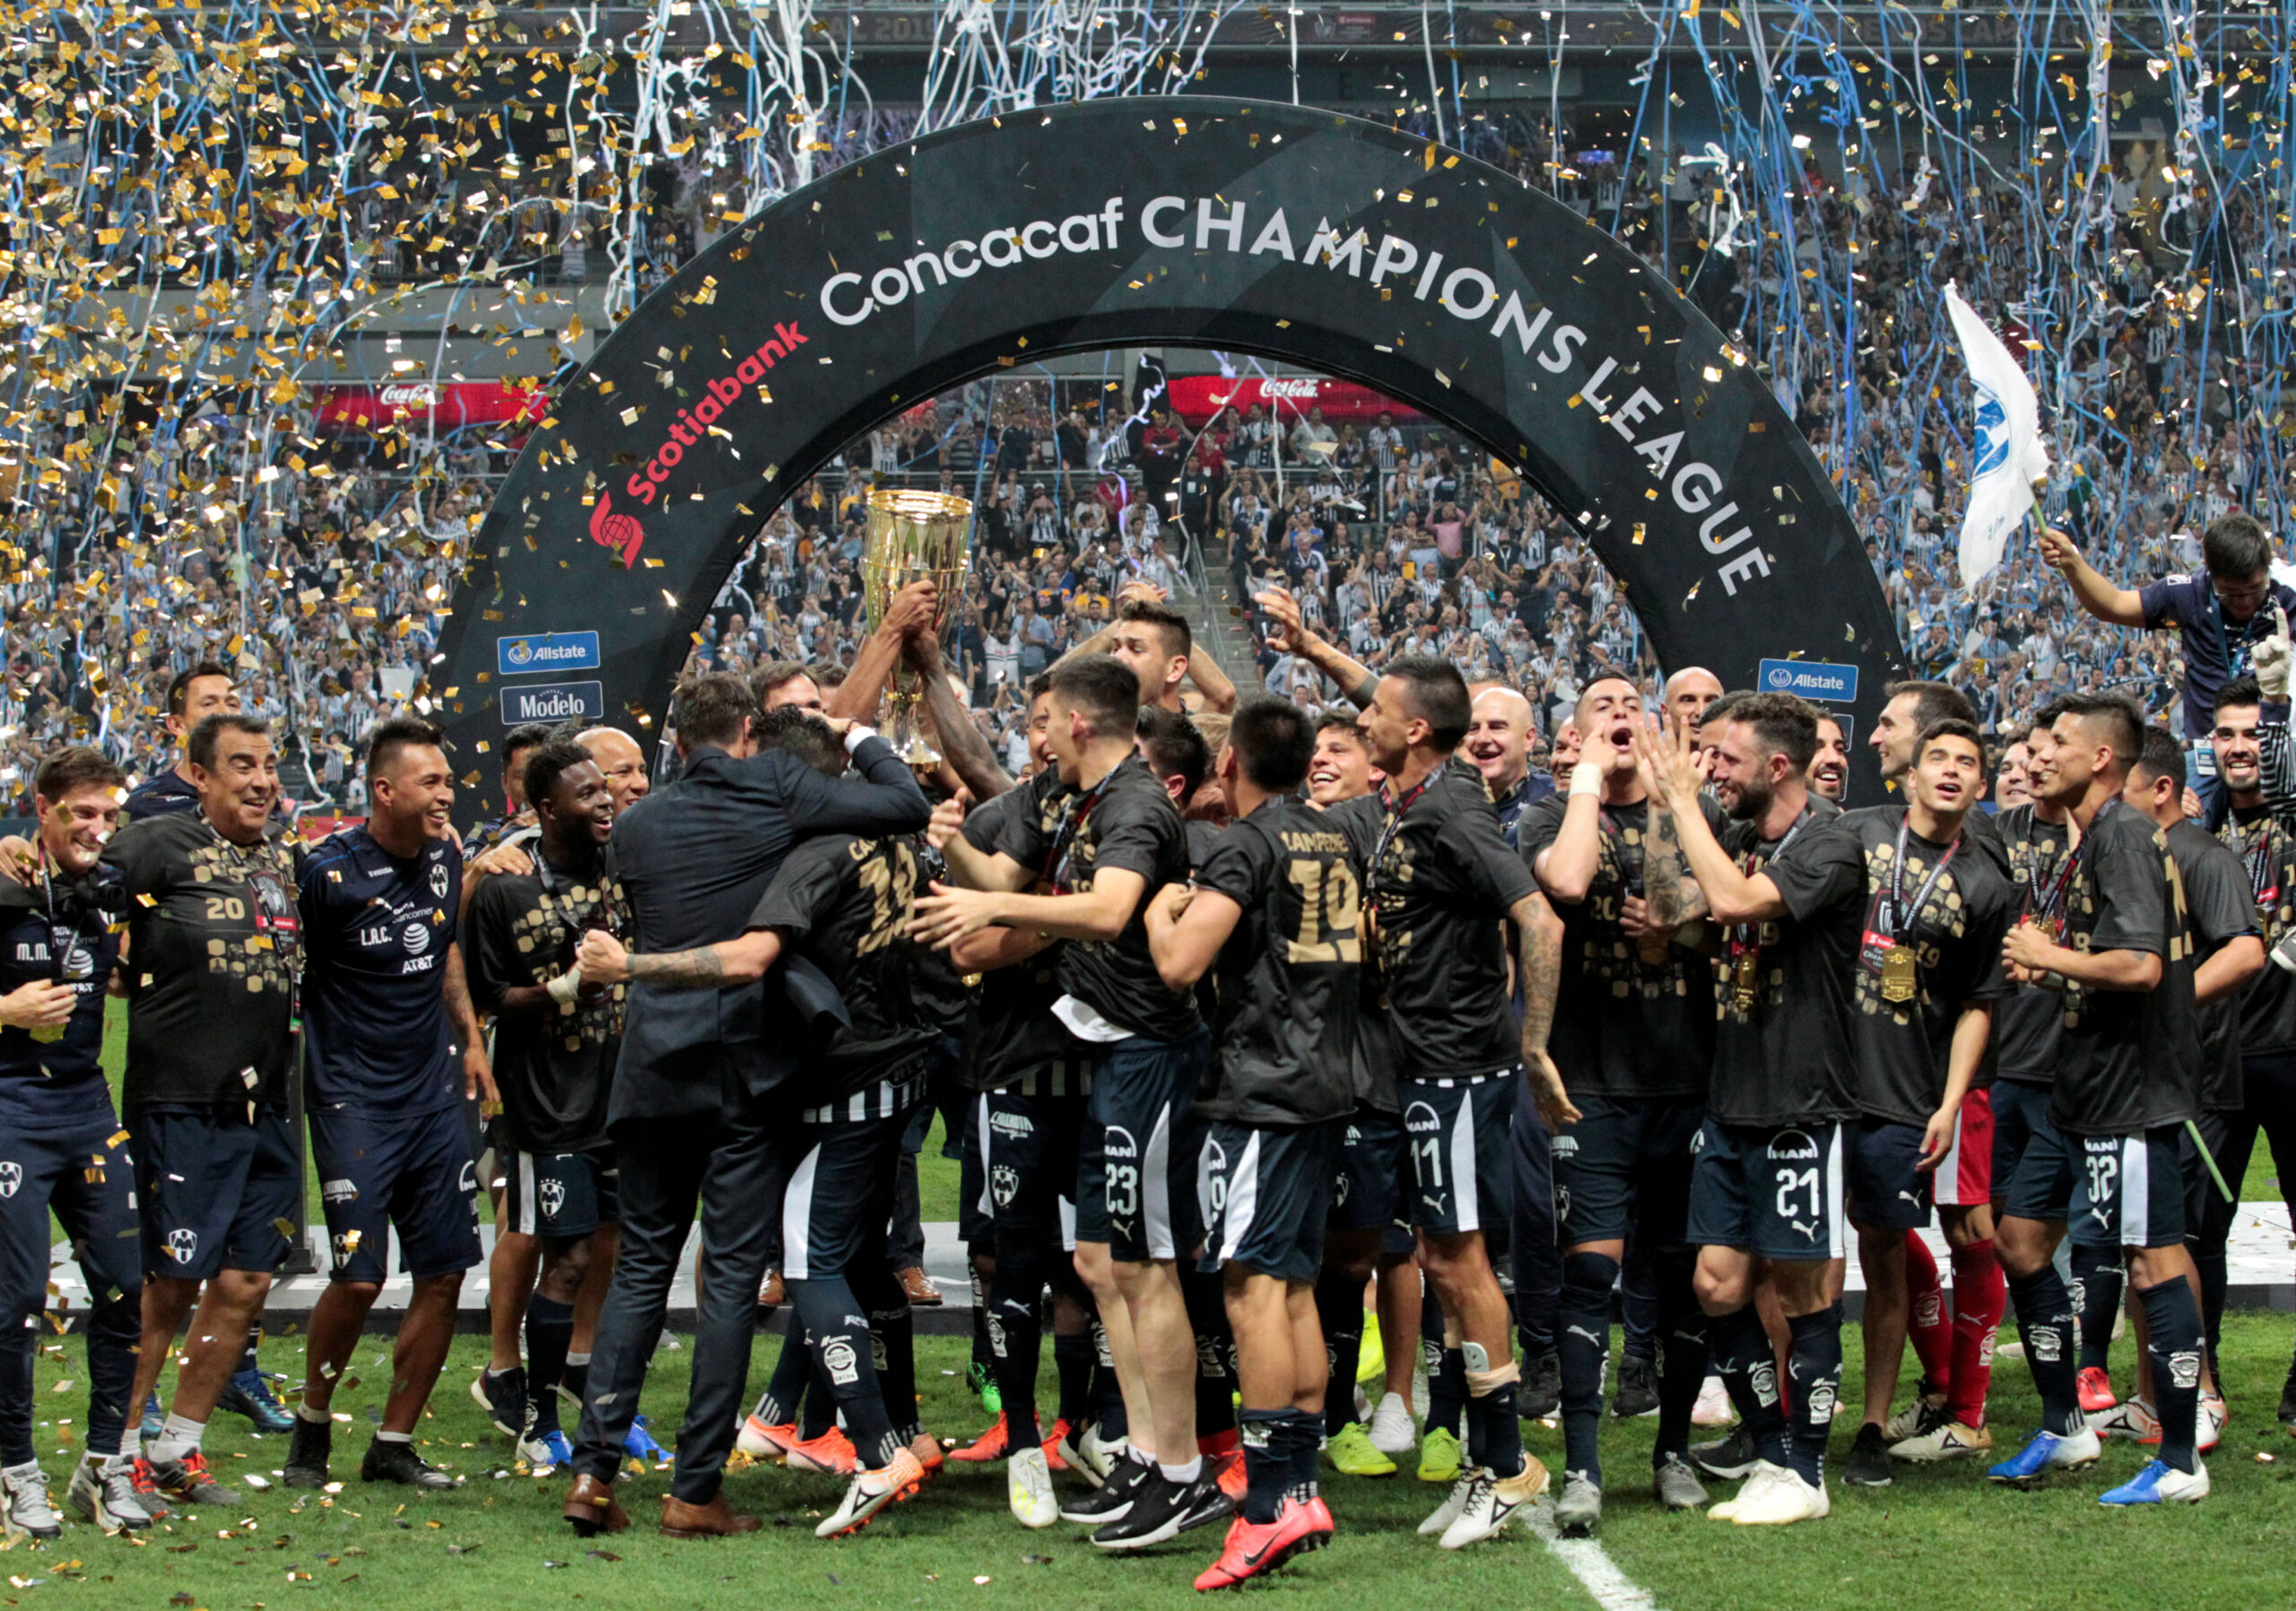 Fase final de Liga Campeones Concacaf se disputará en Orlando Glocal